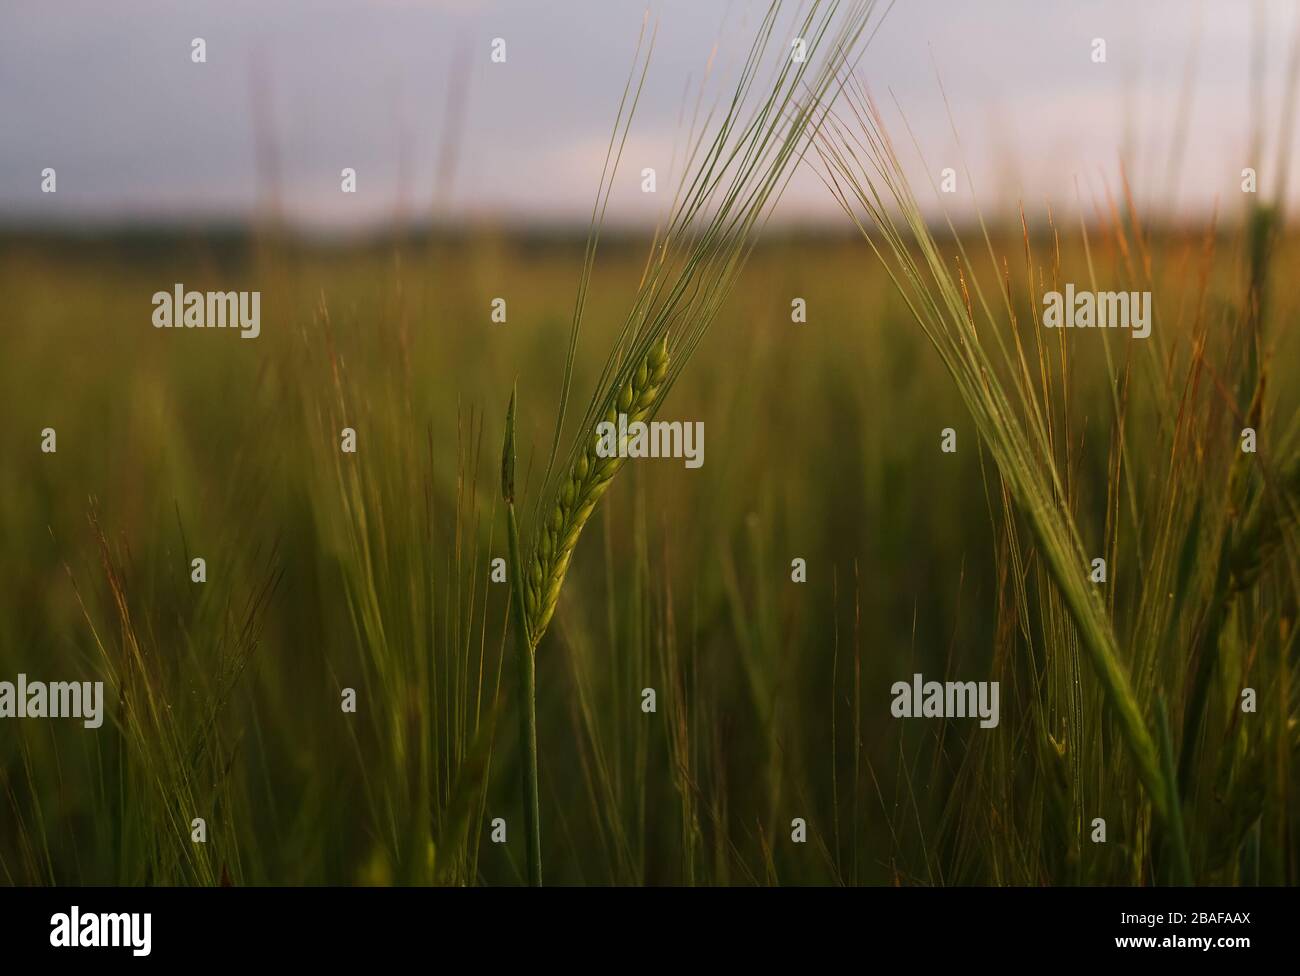 Gerstenohr auf einem Feld im Morgengrauen. Schöner natürlicher Hintergrund mit selektivem Fokus. Stockfoto